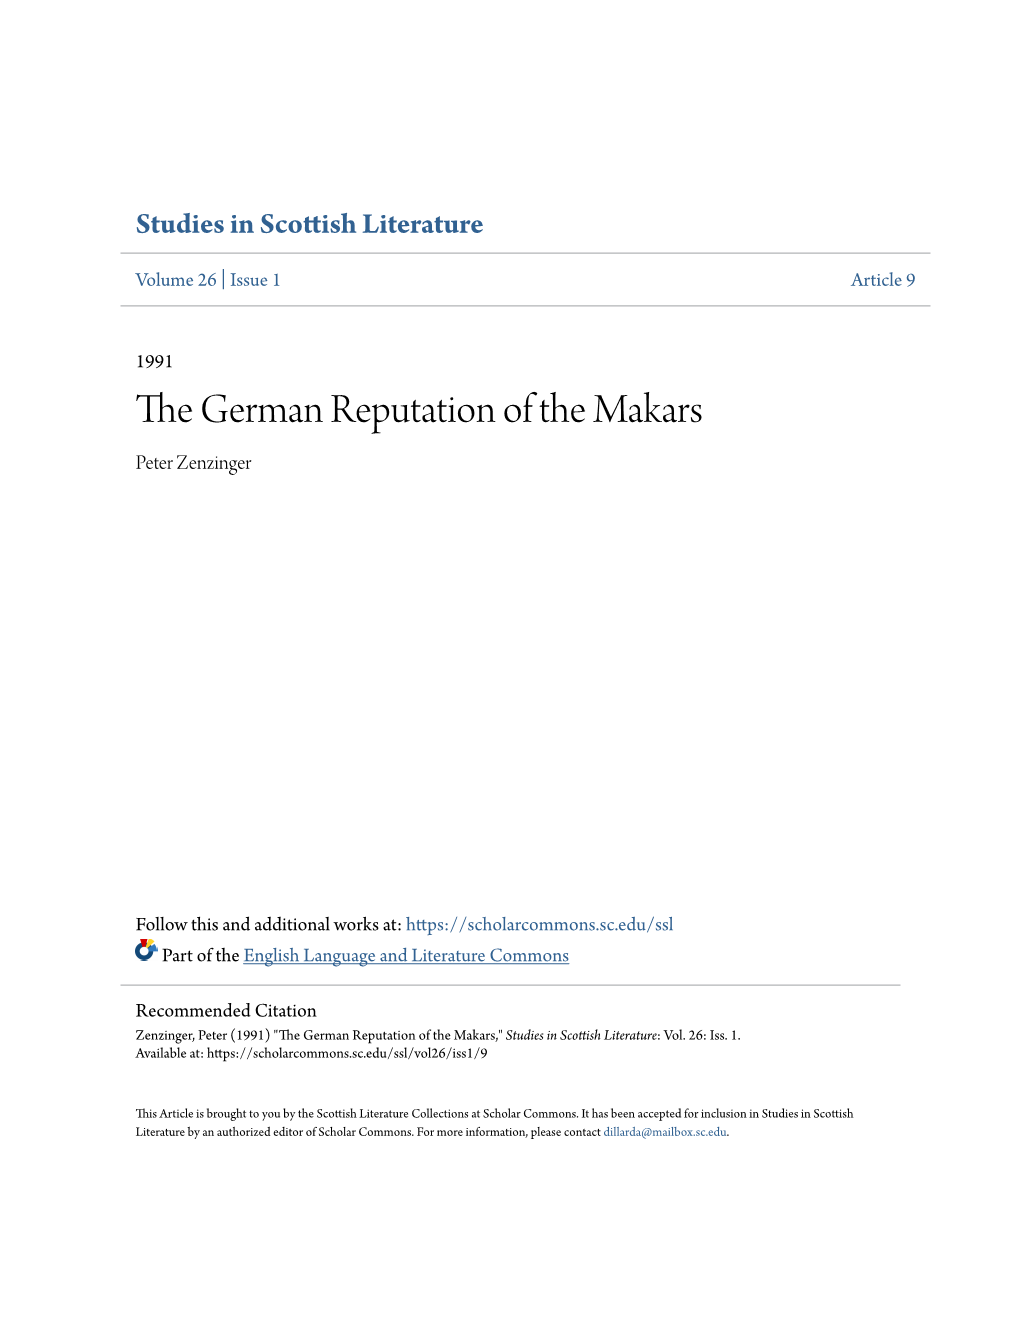 The German Reputation of the Makars Peter Zenzinger